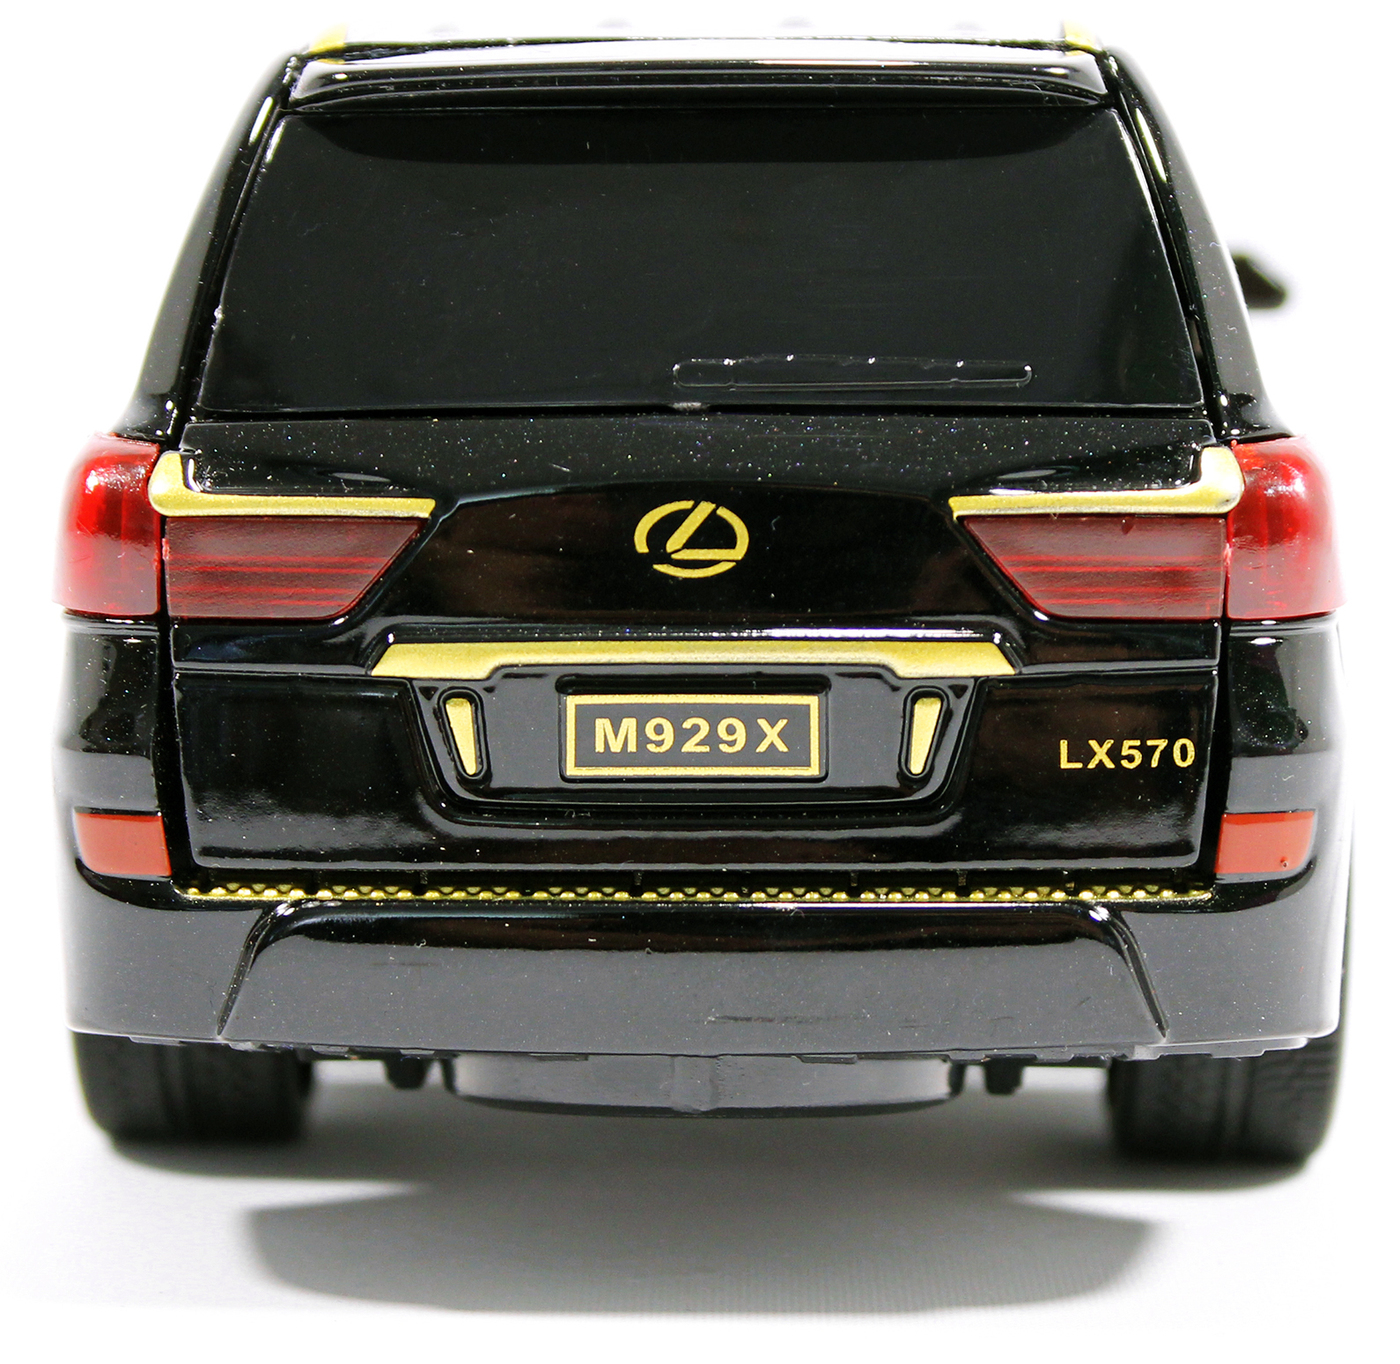 Металлическая машинка XLG 1:24 «Lexus LX570» 20 см. M929Х инерционная, свет, звук / Черно-золотой